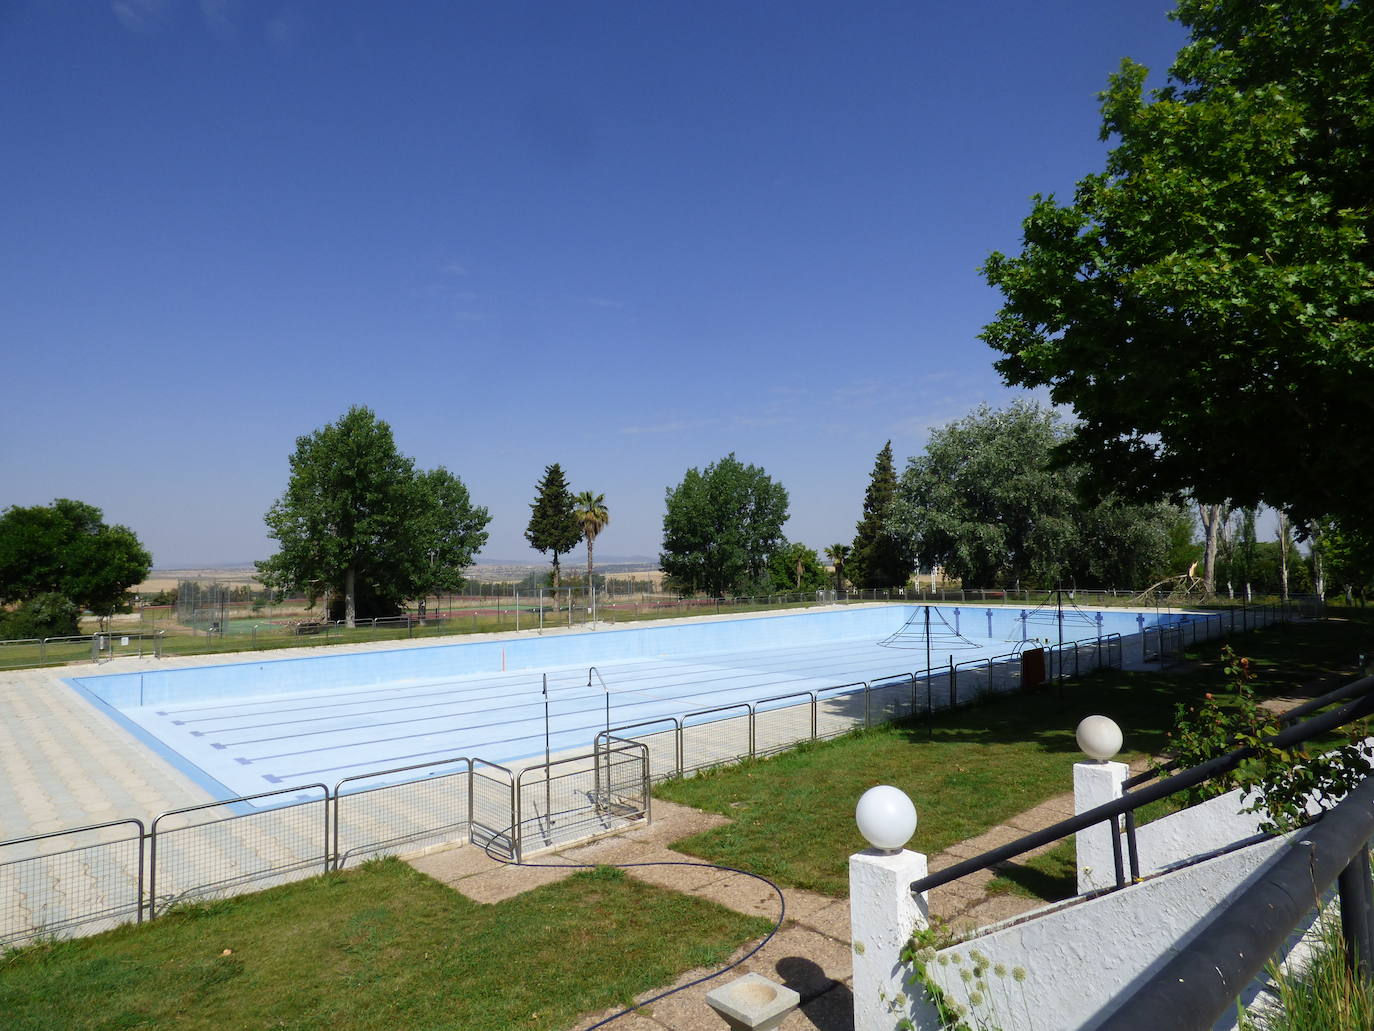 La piscina municipal de Castuera abrirá el jueves 24 de junio con las pertinentes medidas de seguridad, higiene y control del aforo